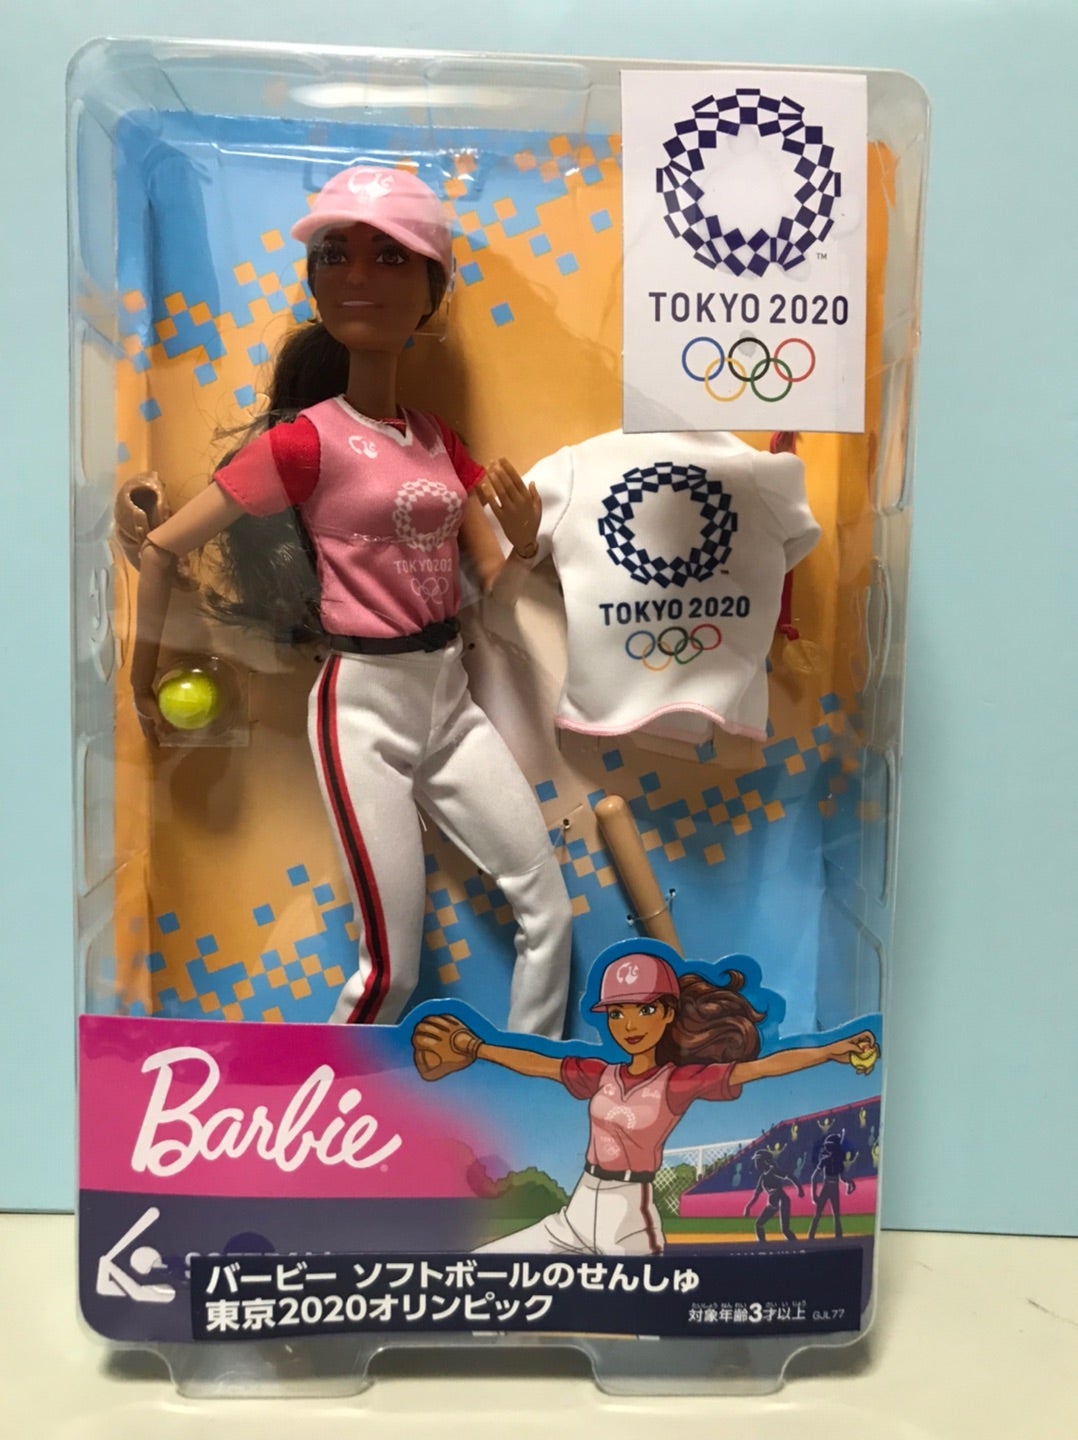 バービー(Barbie) 東京オリンピックライセンス バービー ソフトボールのせんしゅ 東京2020オリンピック  着せ替え人形ドール、アクセサ  6VIG4yw5on, 人形 - centralcampo.com.br